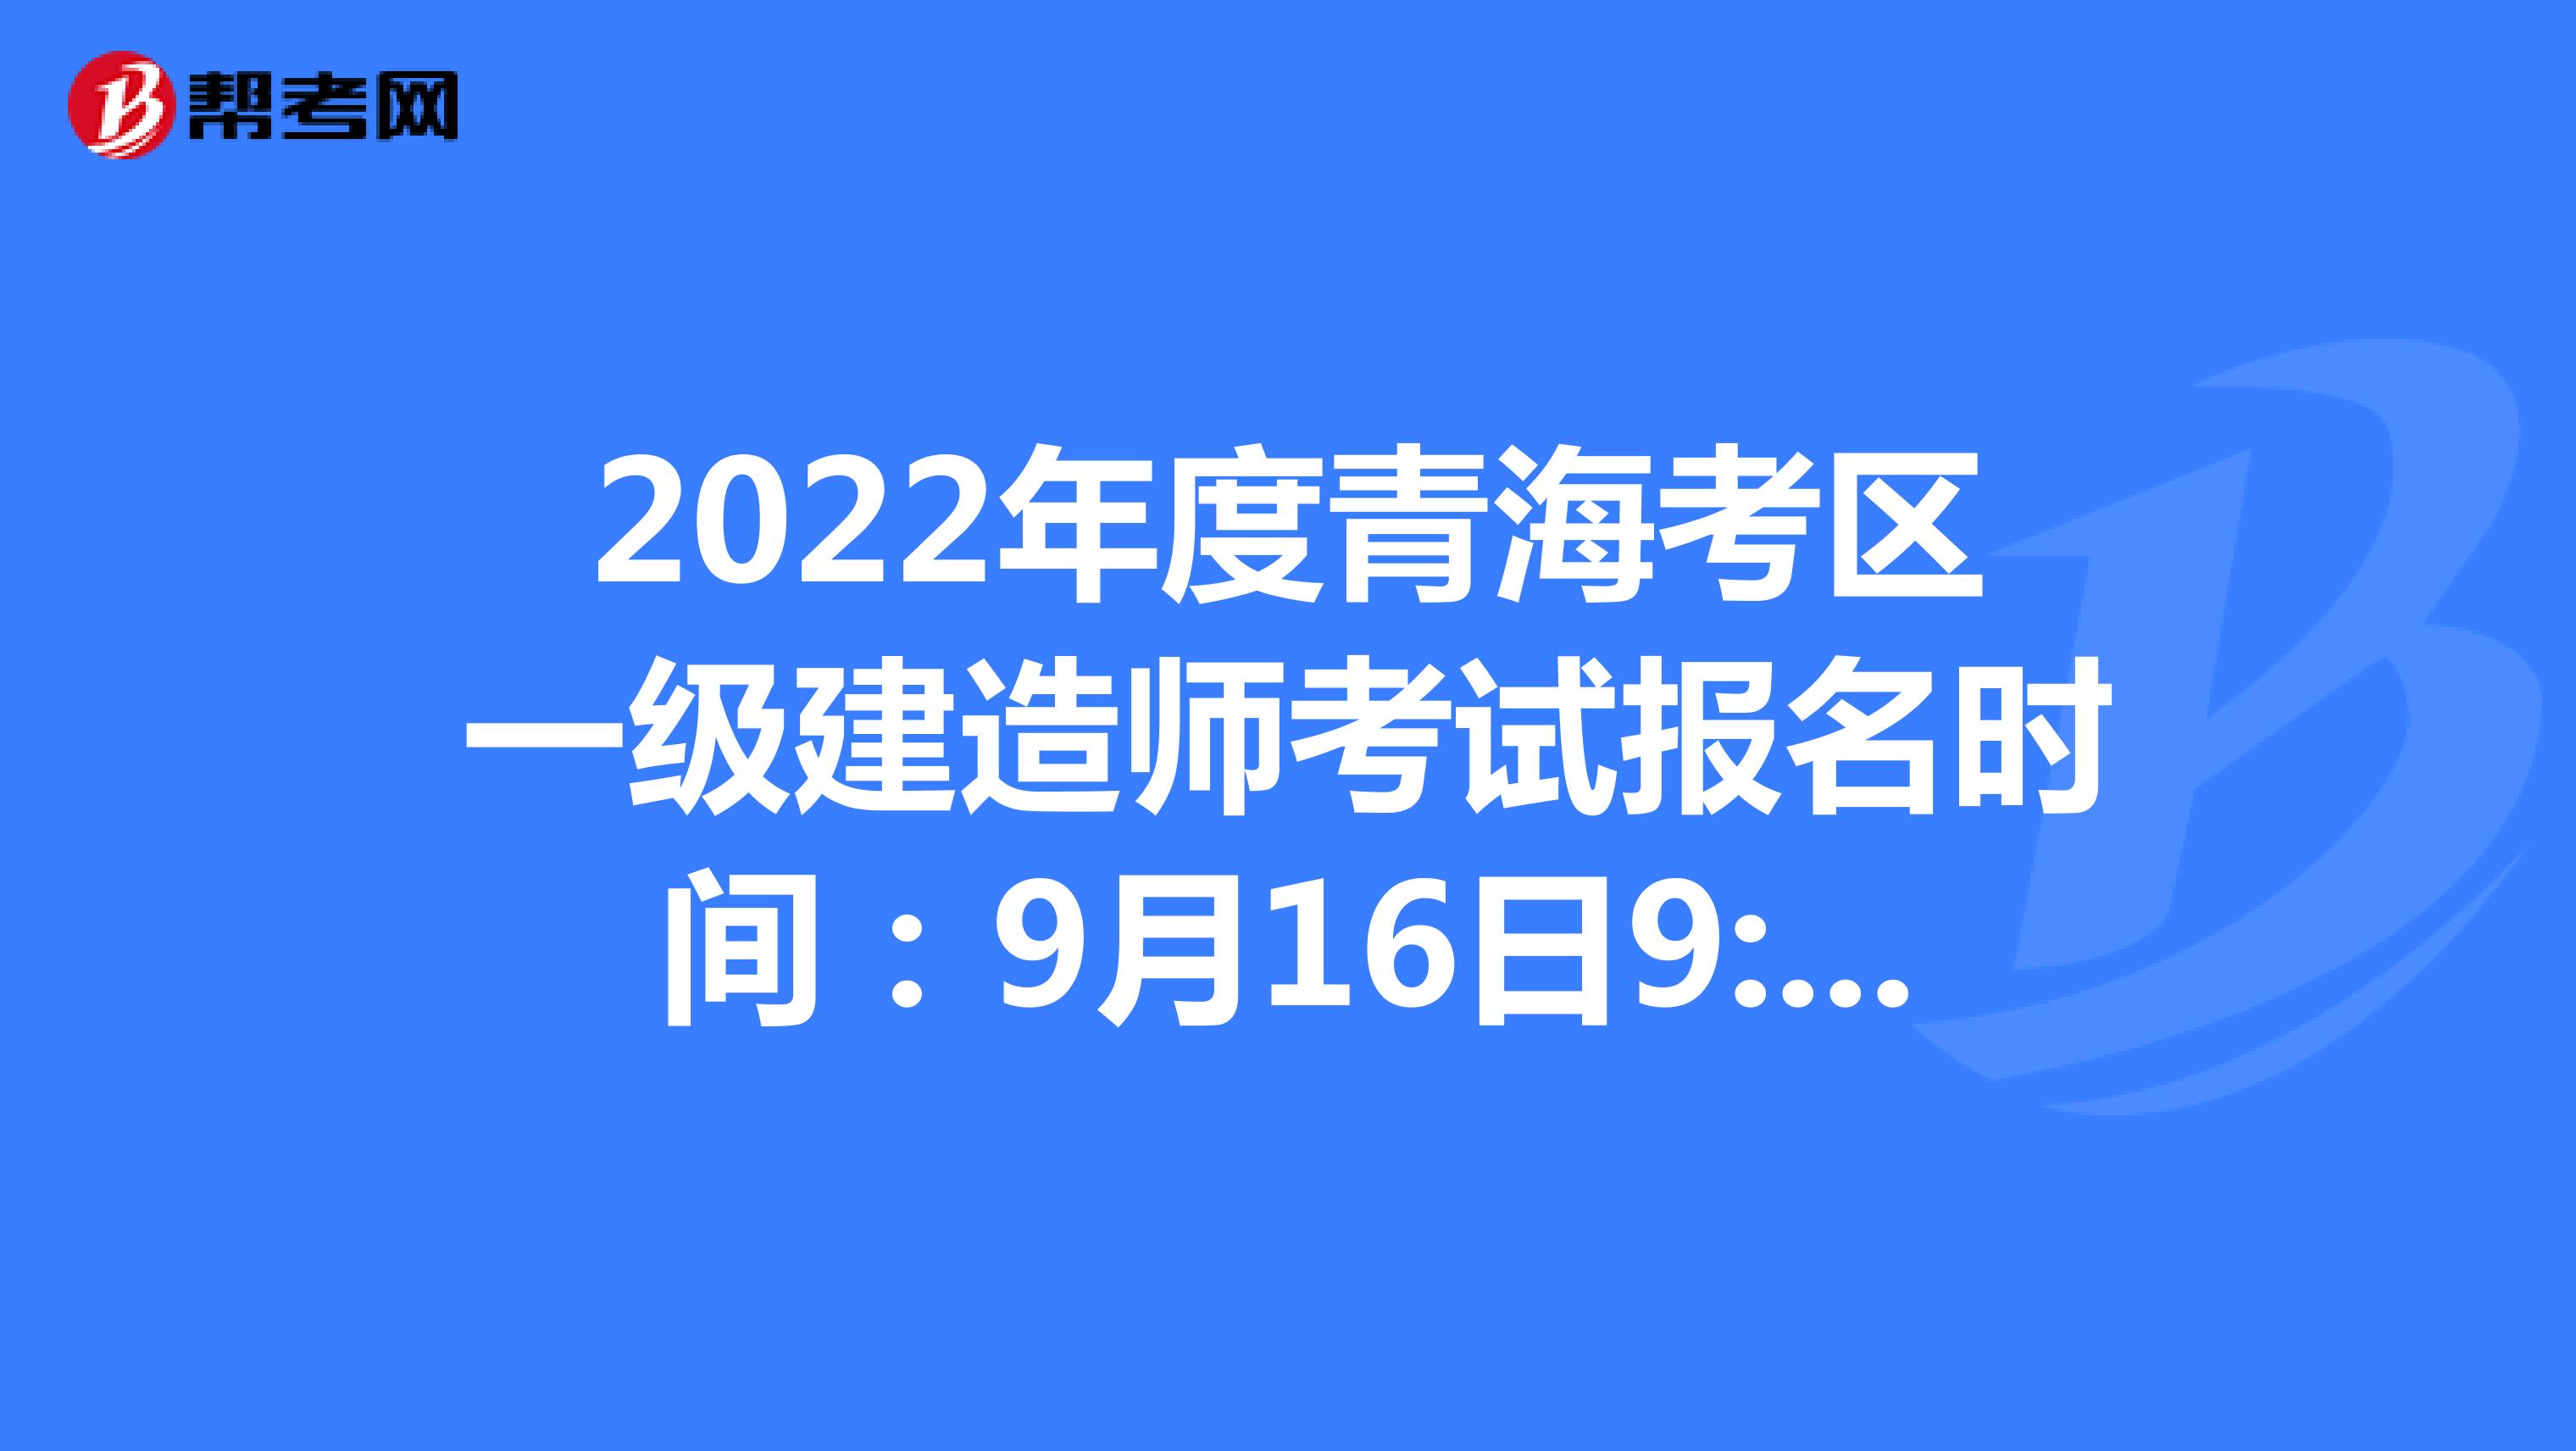 2022年度青海考区一级建造师考试报名时间：9月16日9:00至9月26日18:00